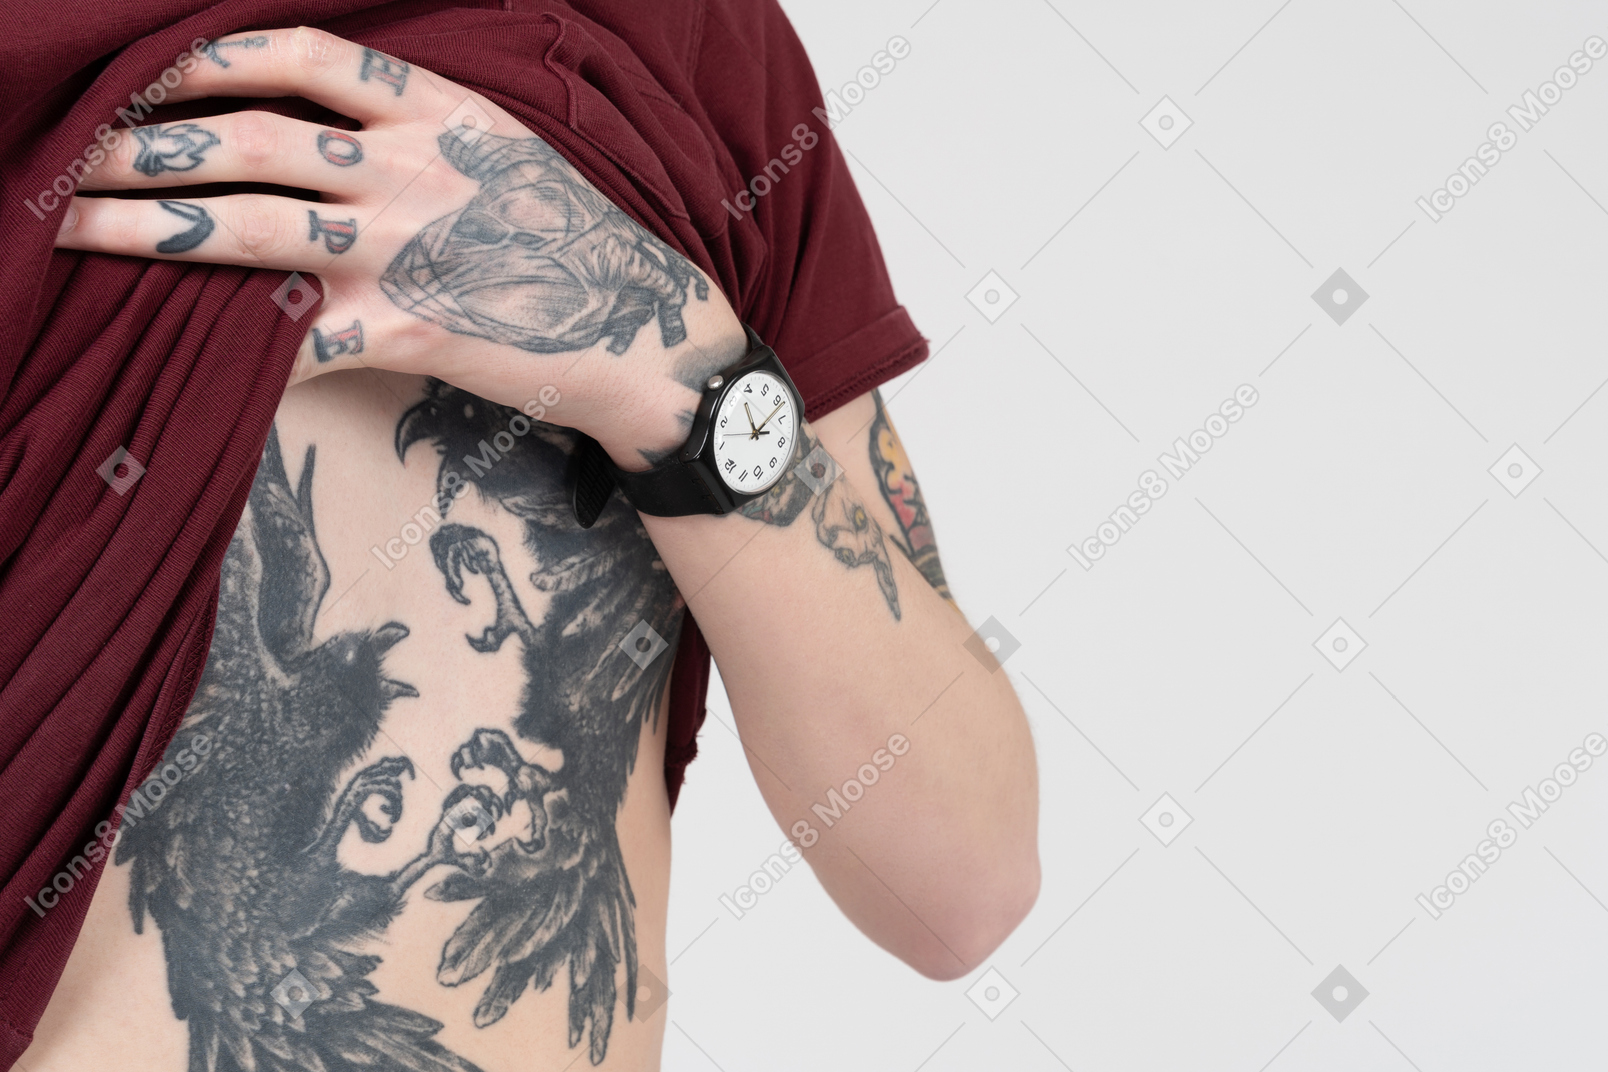 Demonstrando abdômen tatuado